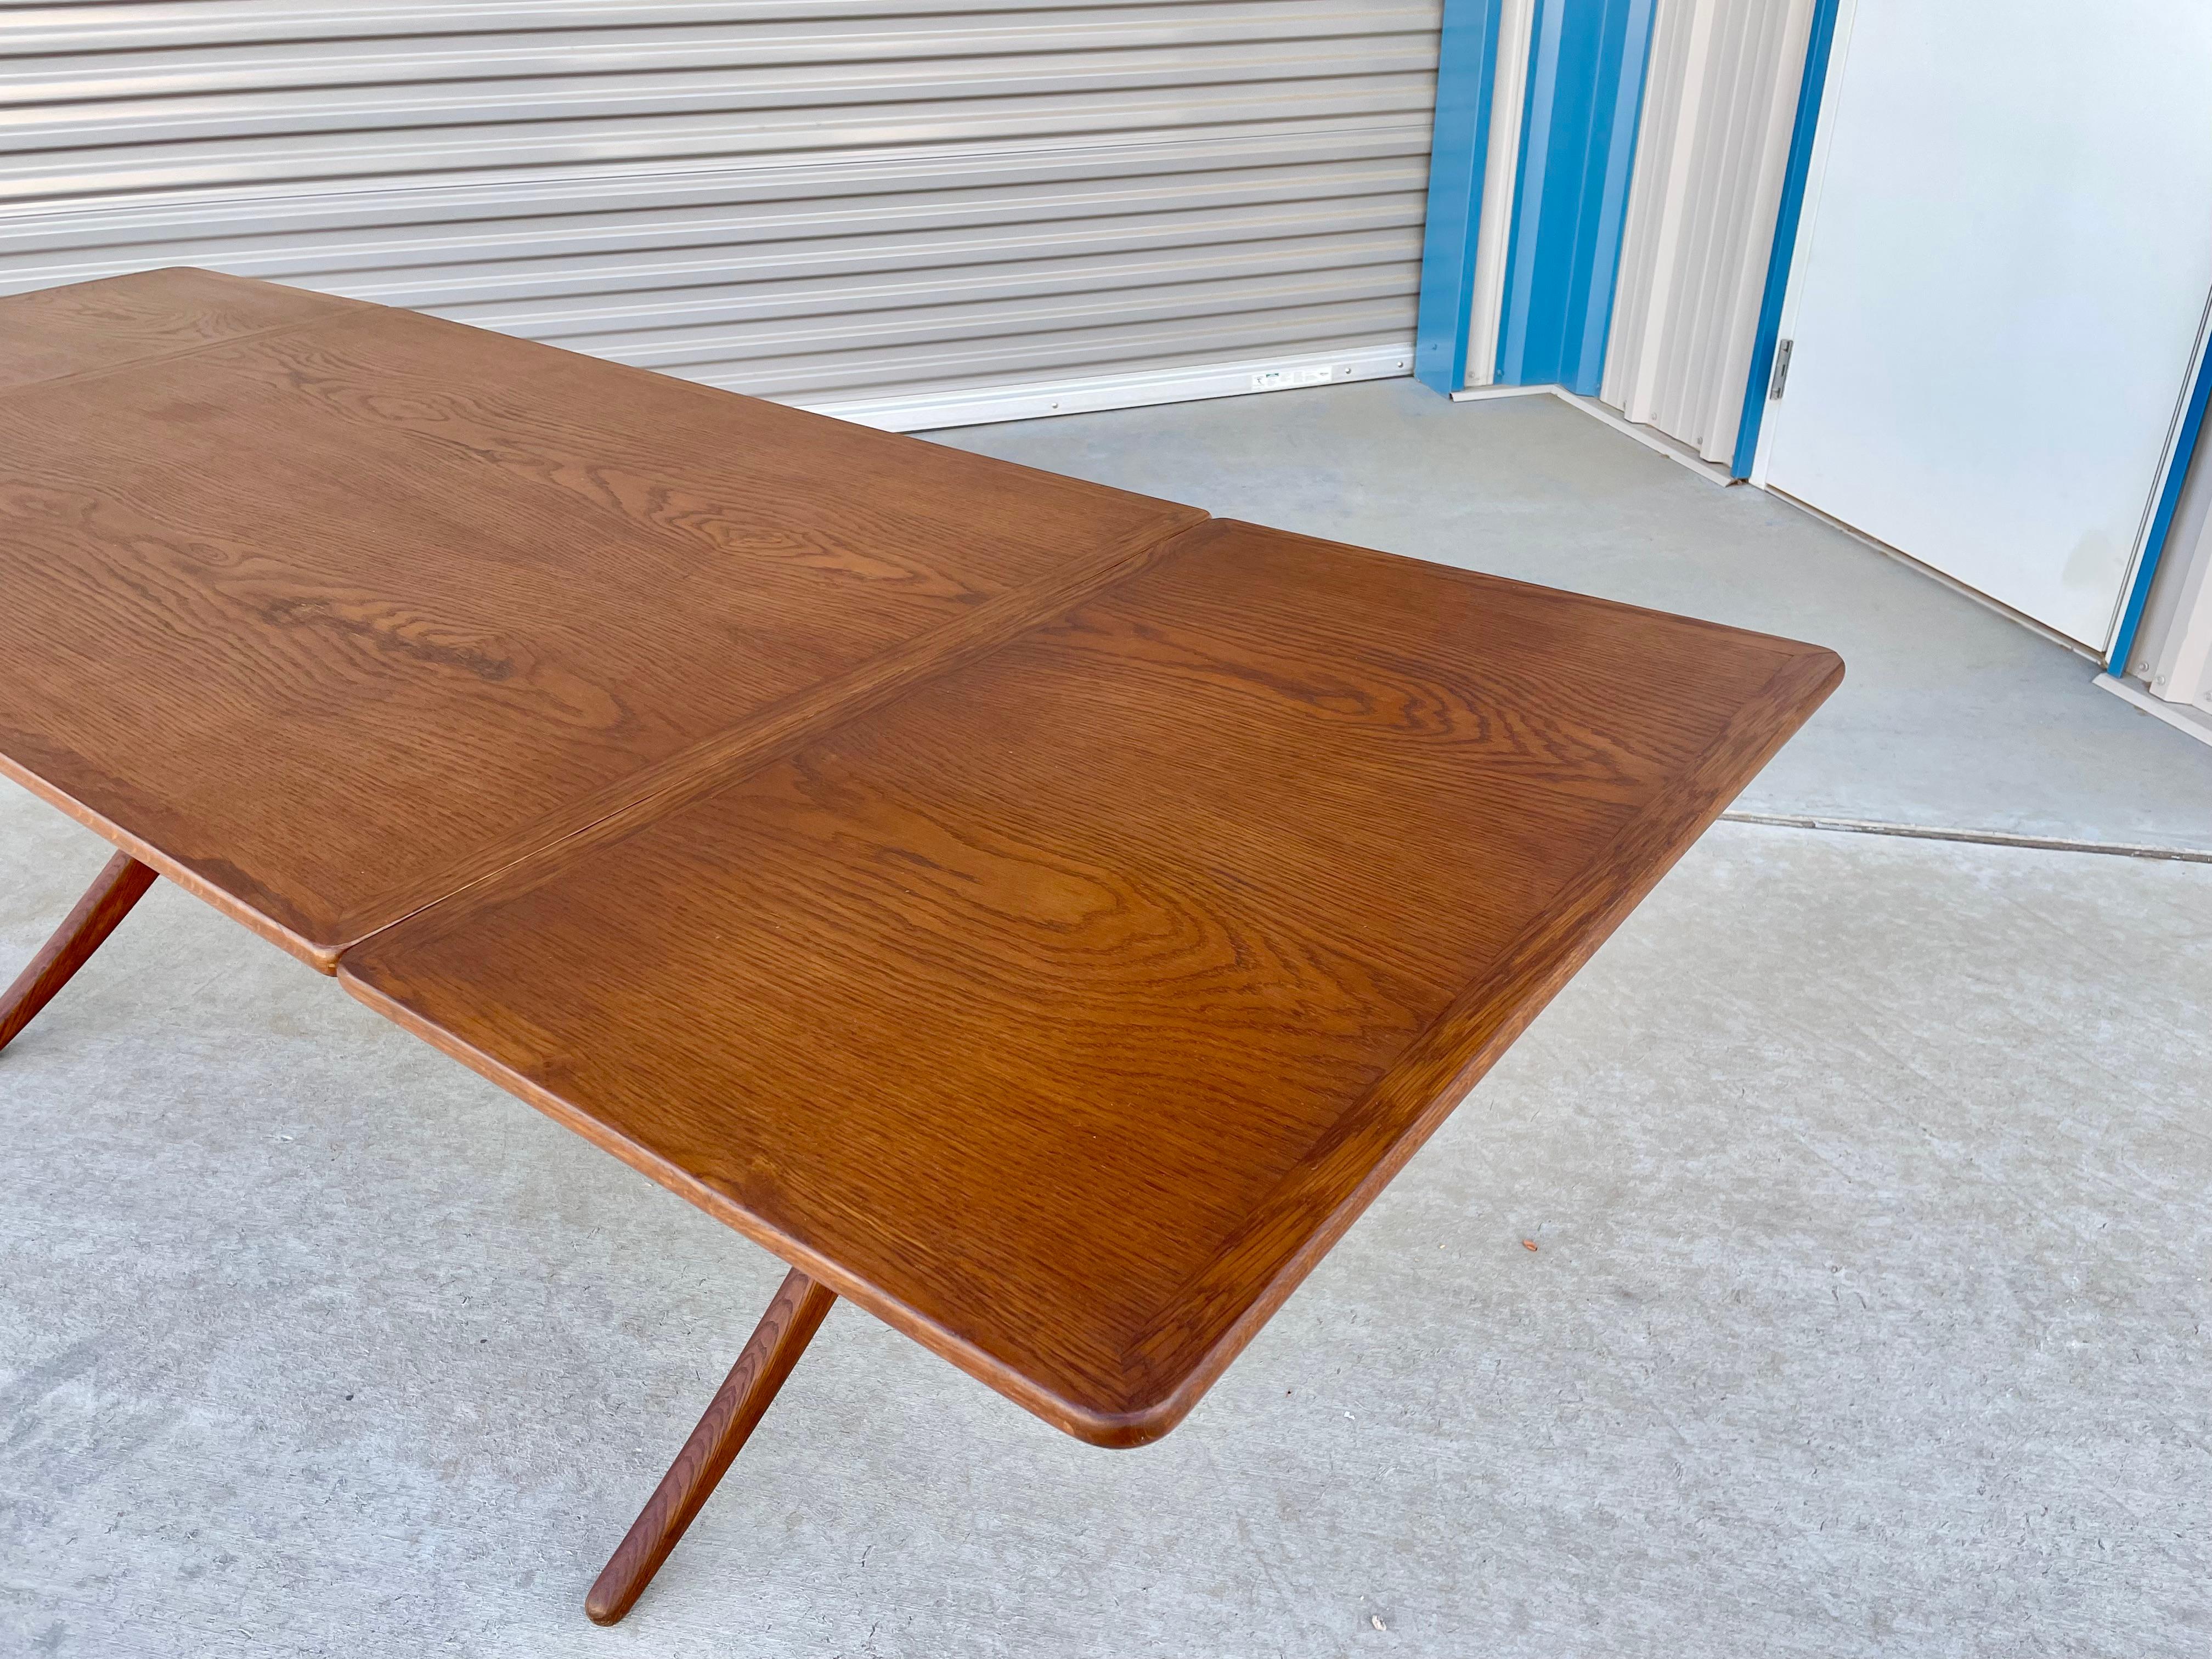 Danish Modern AT-304 Teak and Oak Dining Table by Hans J. Wegner For Sale 5